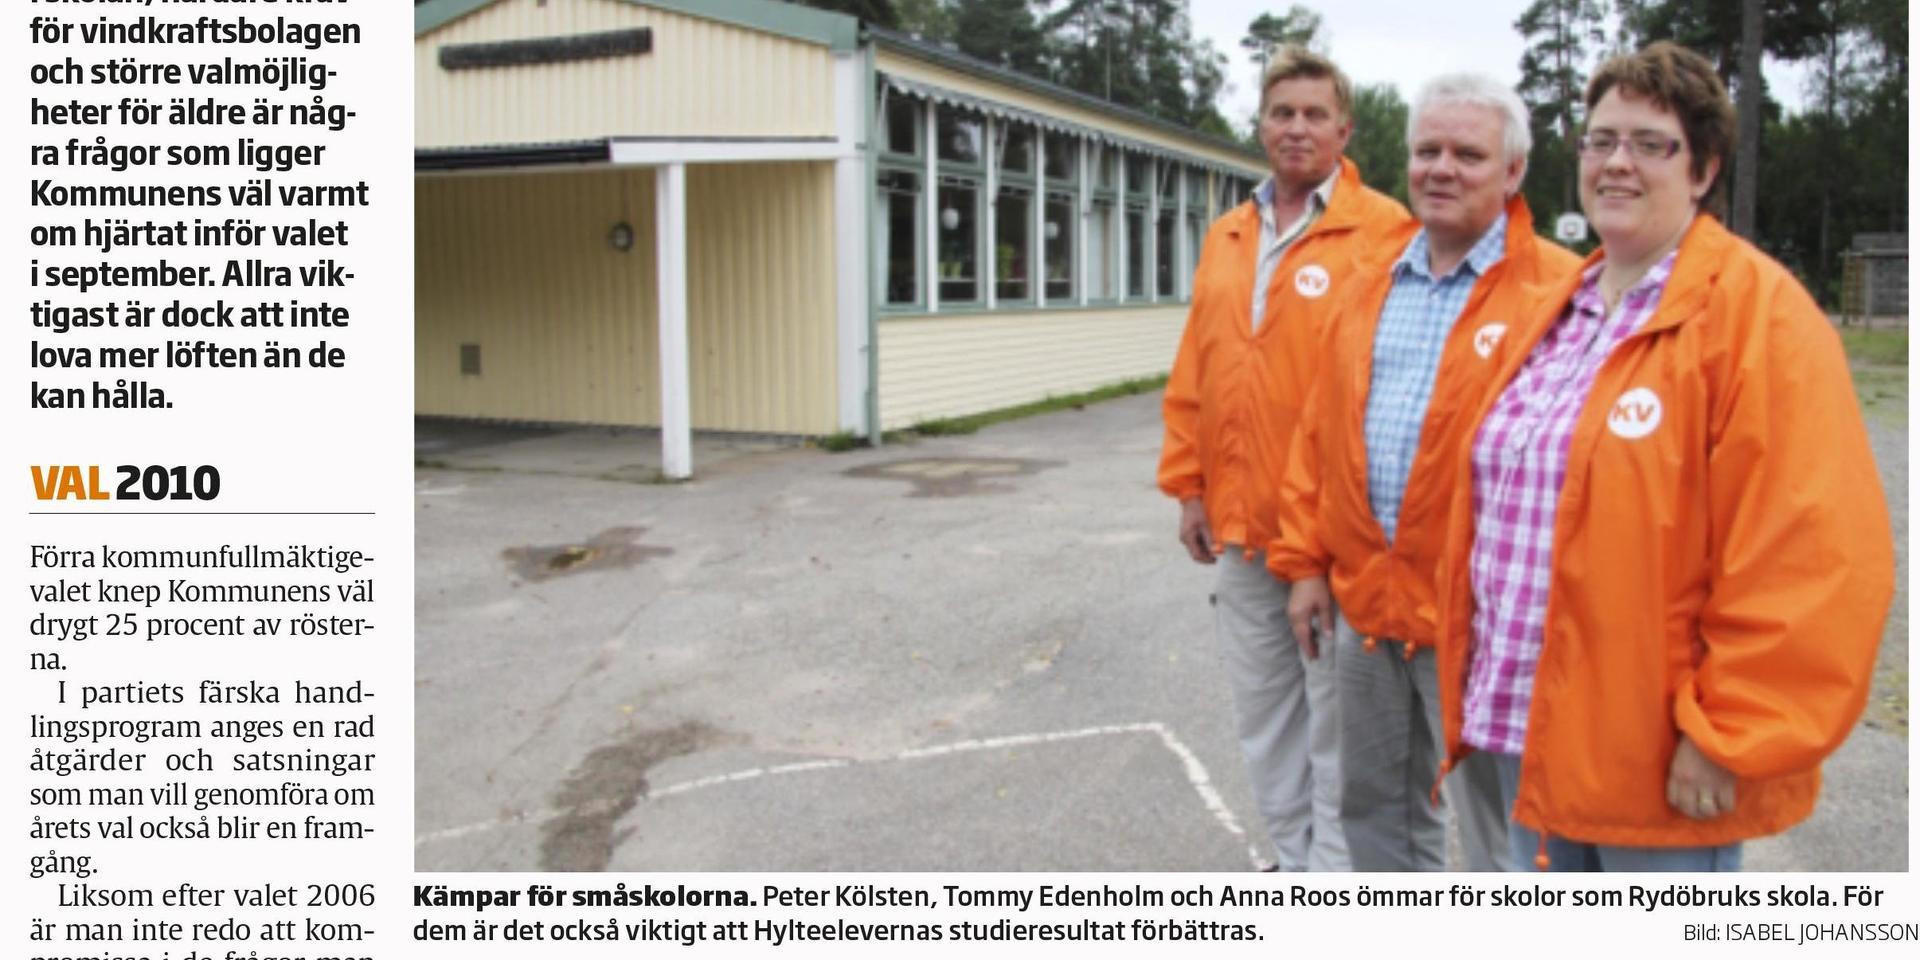 Hallandsposten den 23 augusti 2010. Kommunens Väl företräddes då av Peter Kölsten, Tommy Edenholm och Anna Roos (numera centerpartist) som berättade att de ”ömmar för skolor som Rydöbruks skola”.